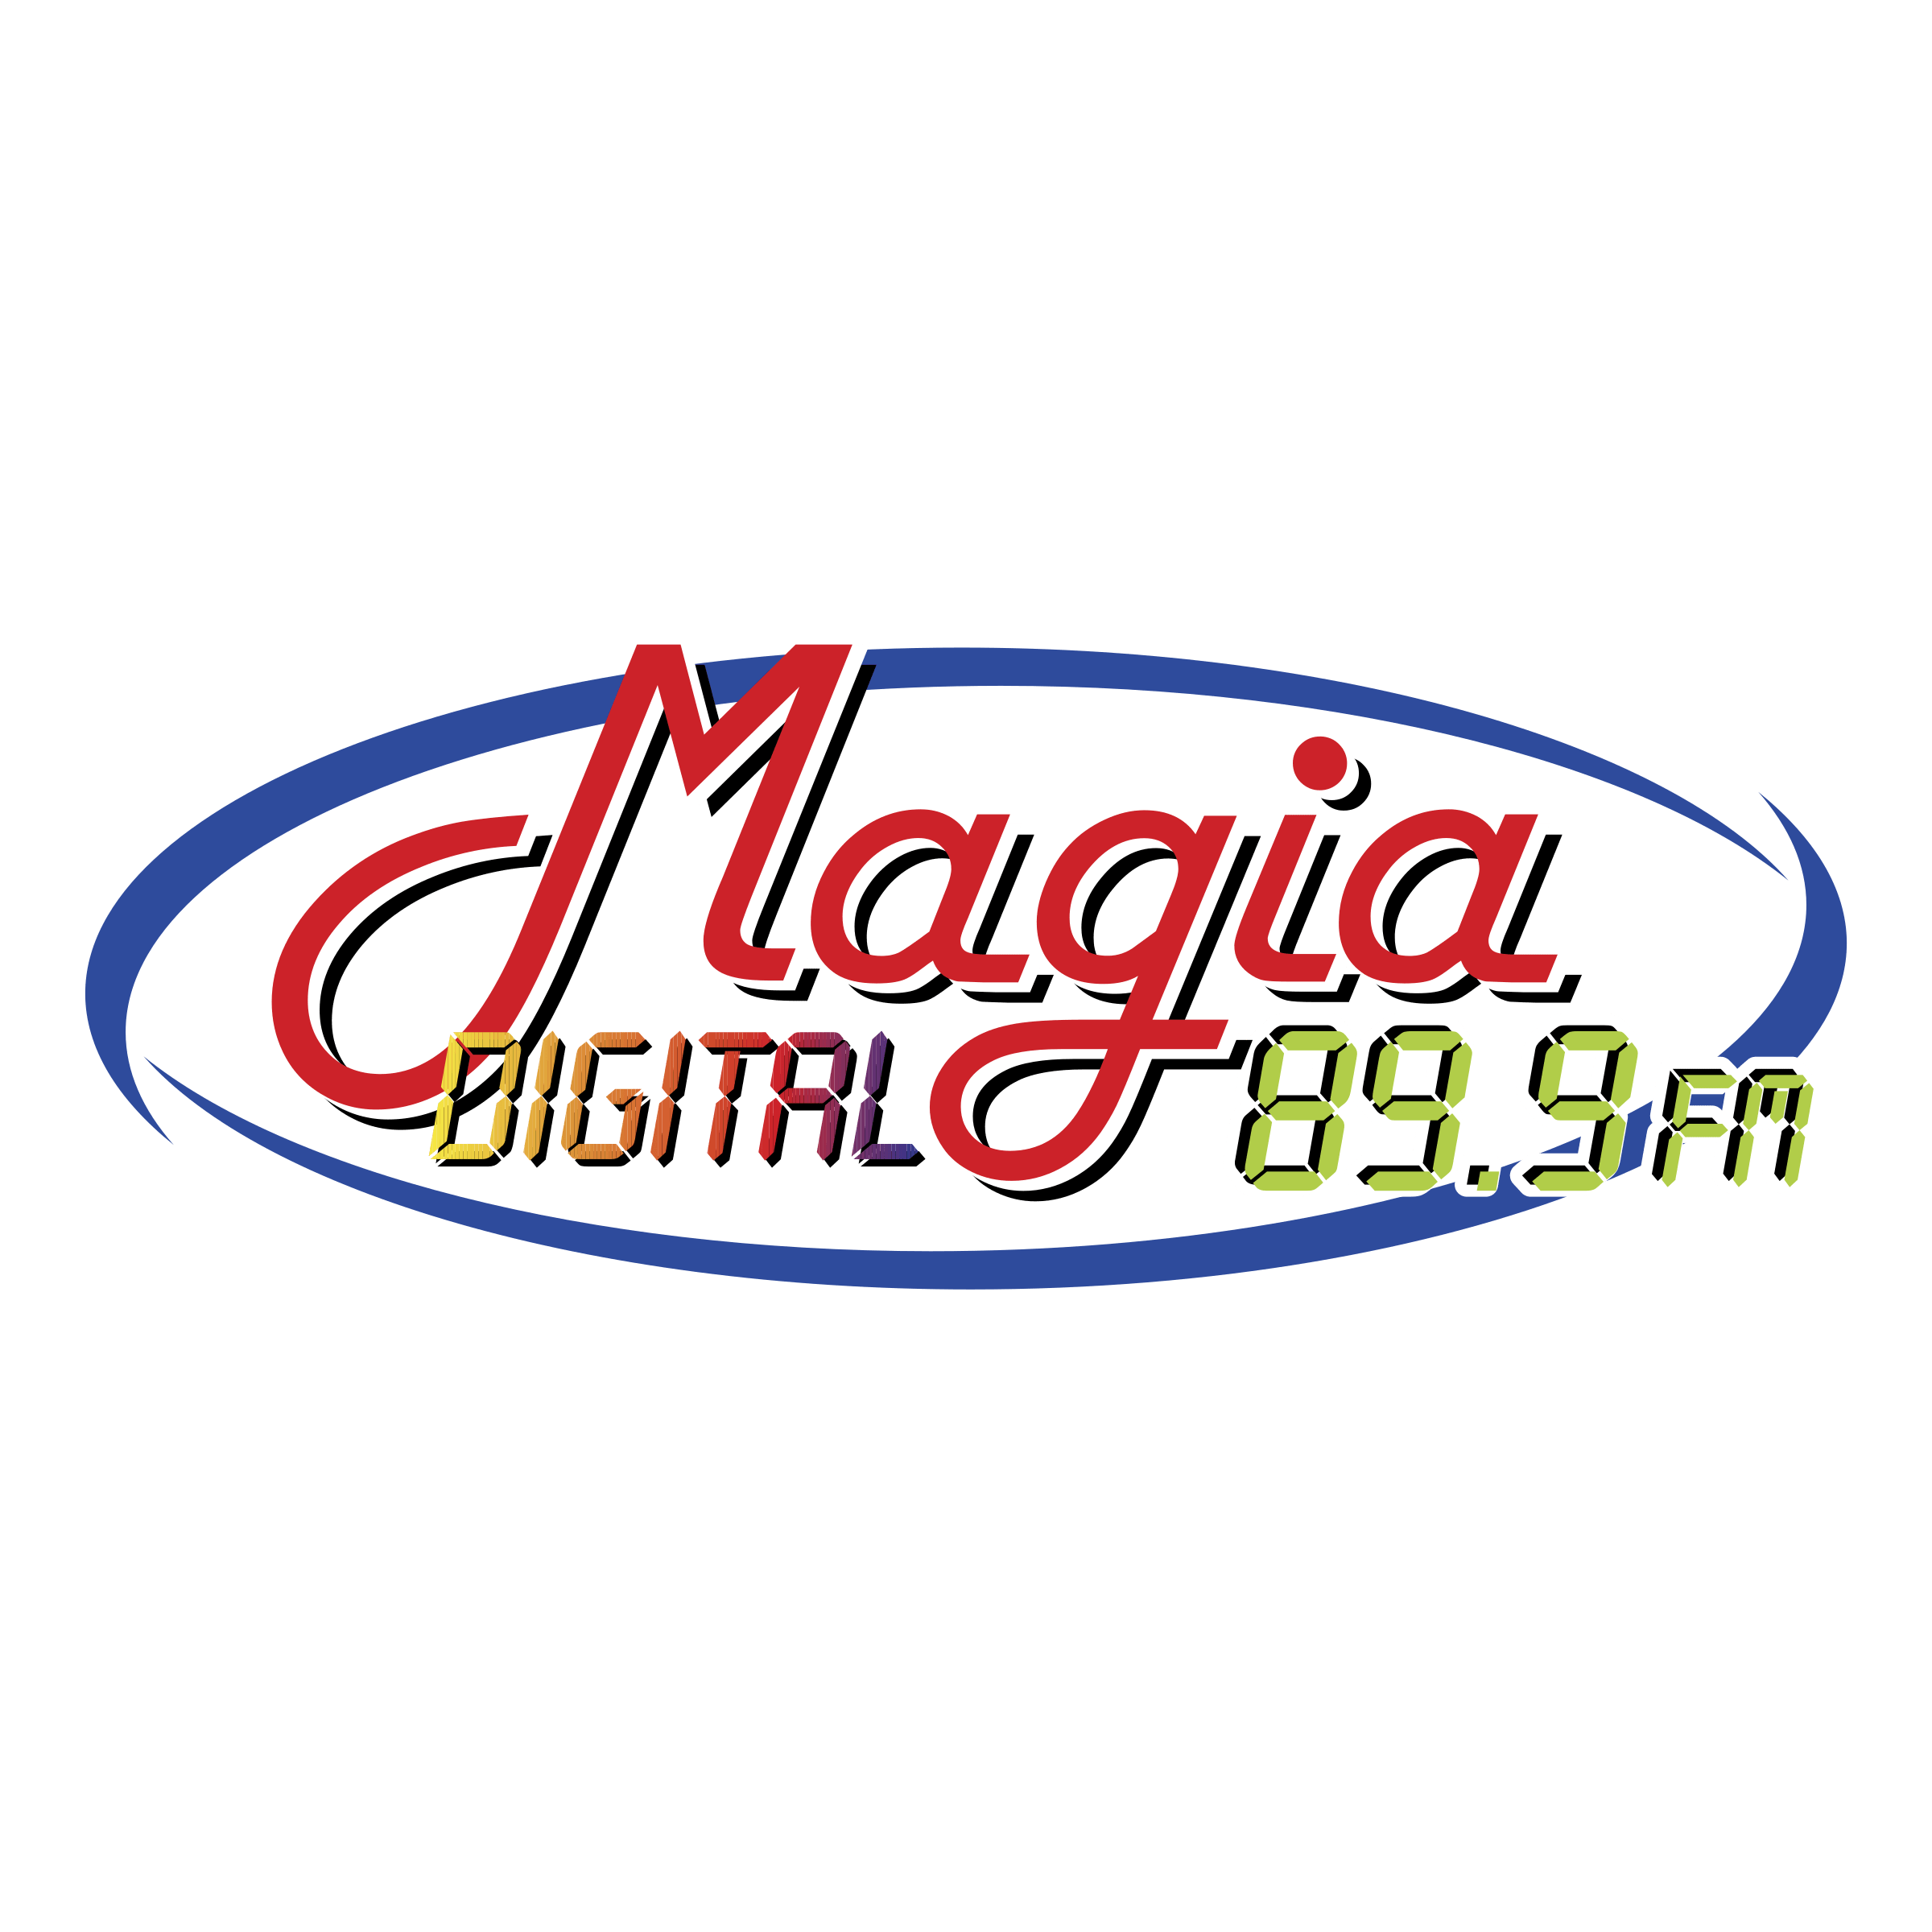 MoreMax Logo - Magia Digital Logo PNG Transparent & SVG Vector - Freebie Supply